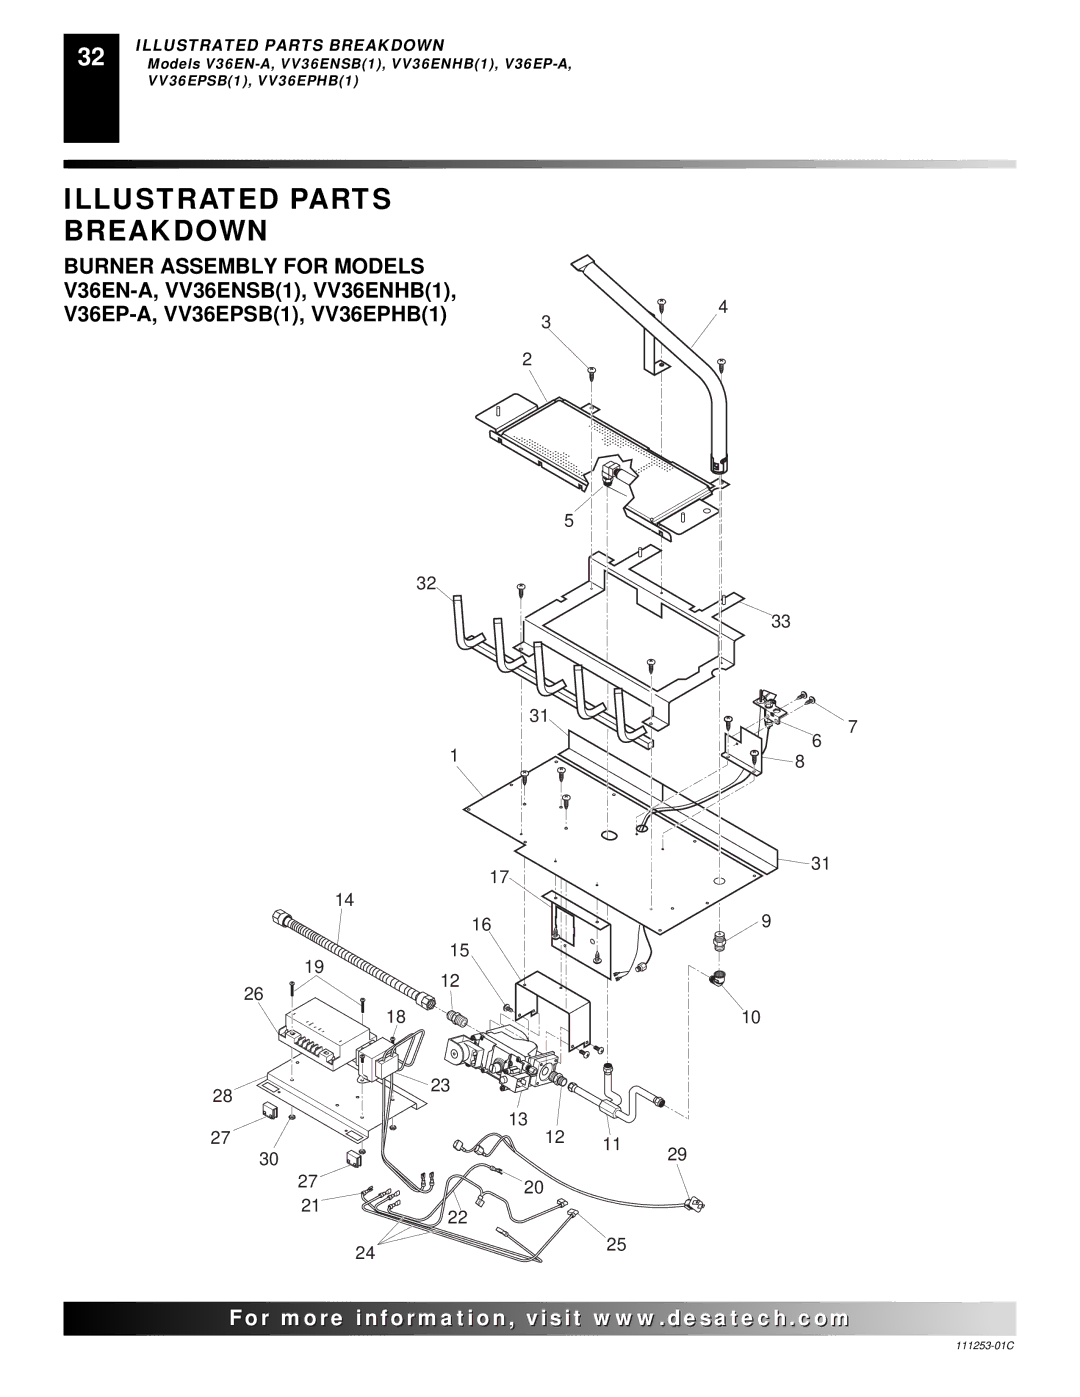 Desa V36EP-A SERIES, V36EN-A SERIES, VV36EPB(1) SERIES, VV36ENB(1) SERIES installation manual Burner Assembly for Models 